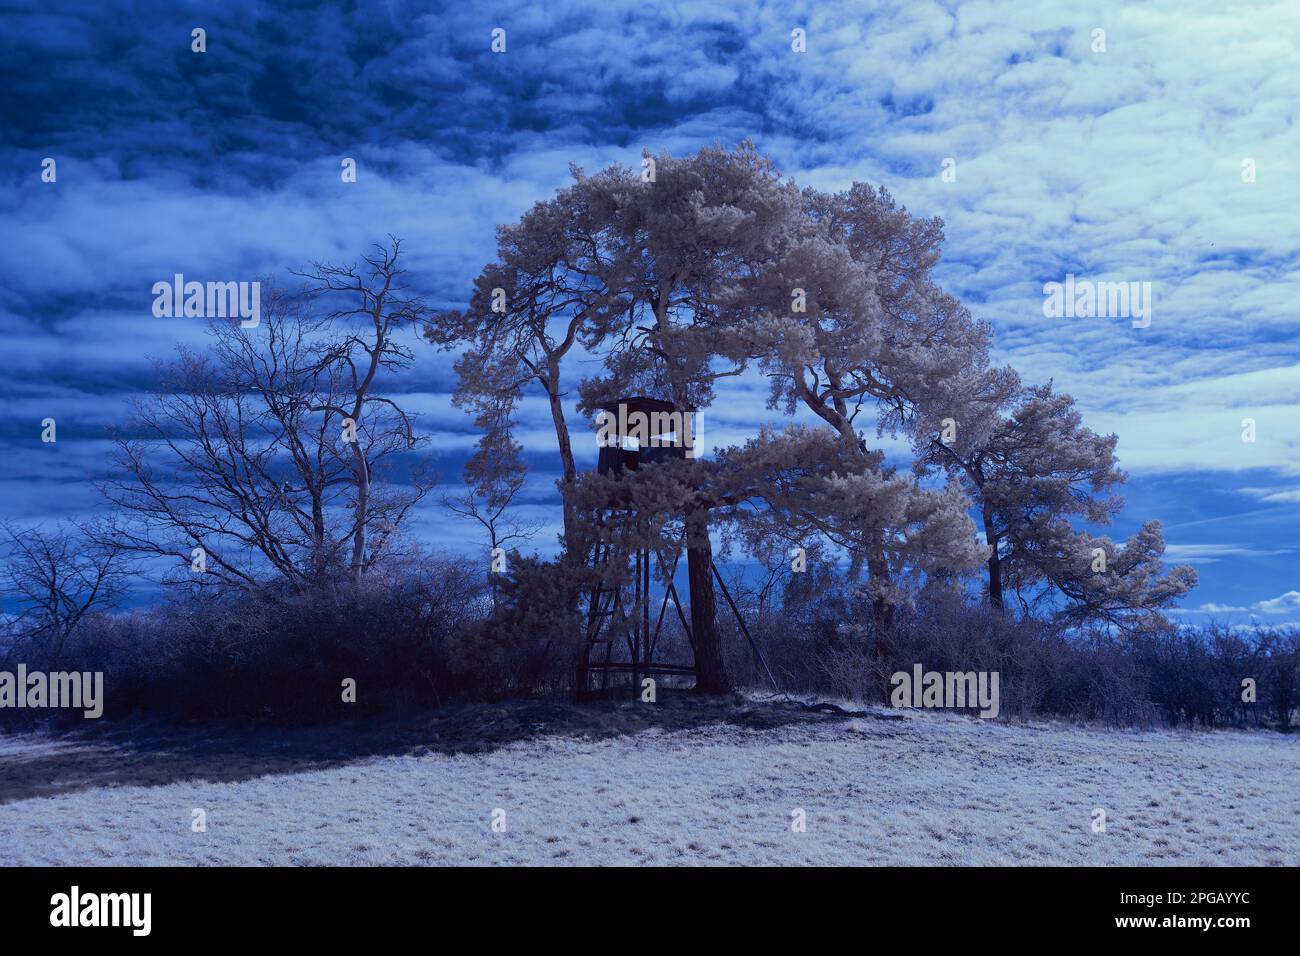 photographie infrarouge - photo infrarouge de paysage sous ciel avec nuages - l'art de notre monde dans le spectre infrarouge Banque D'Images